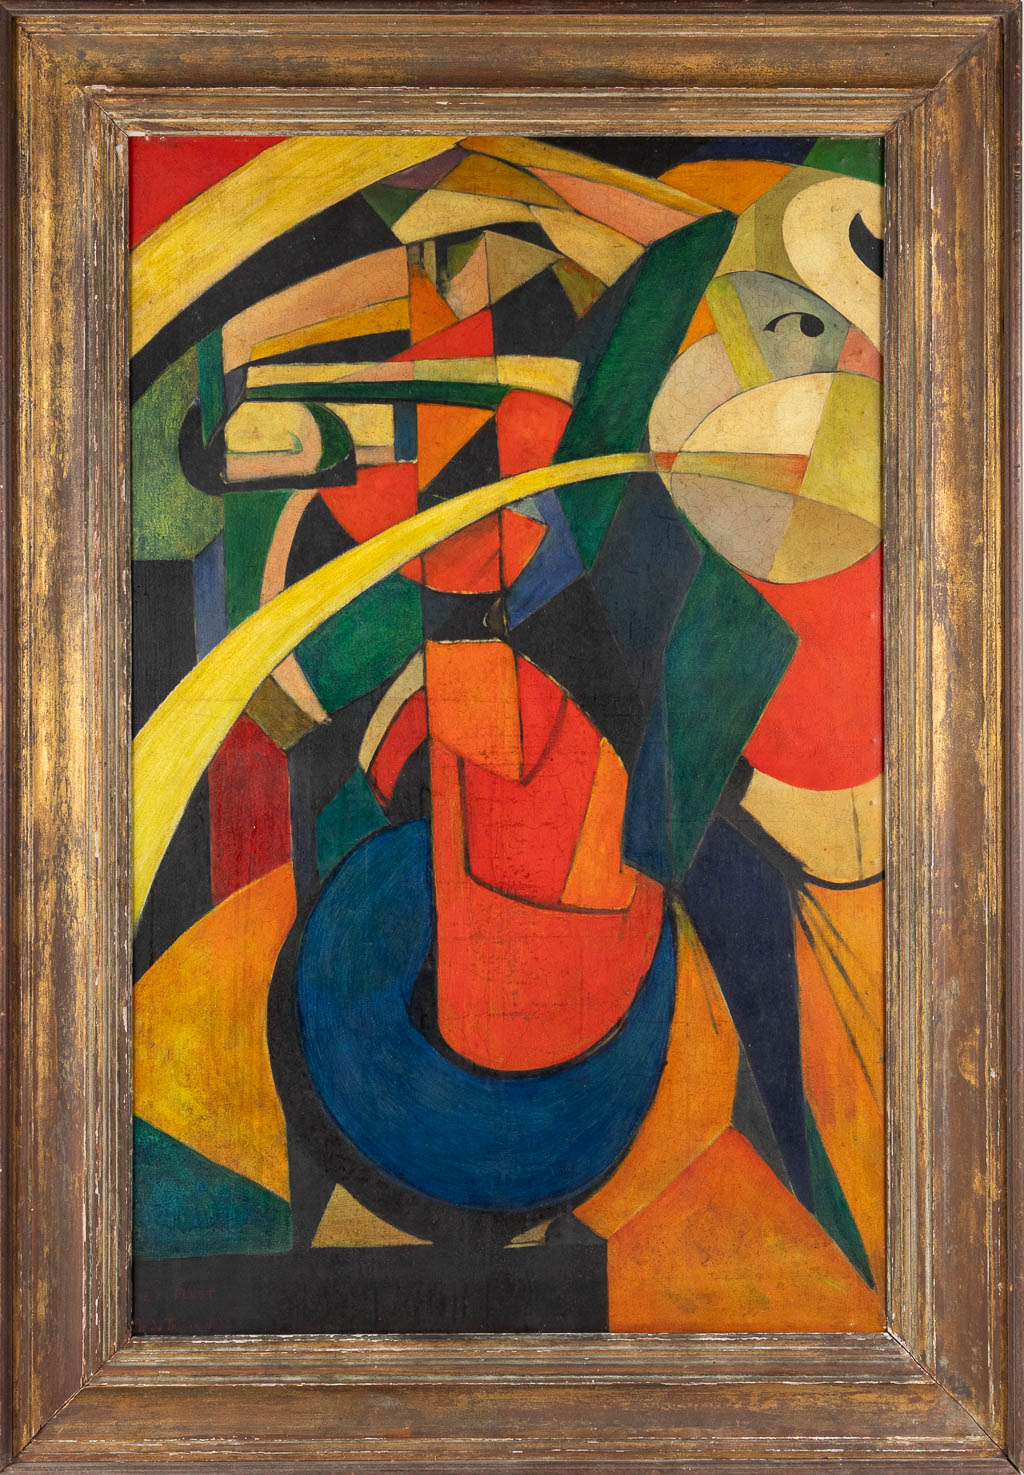 Prosper DE TROYER (1880-1961) 'Het Feest' | Flanders Auctions